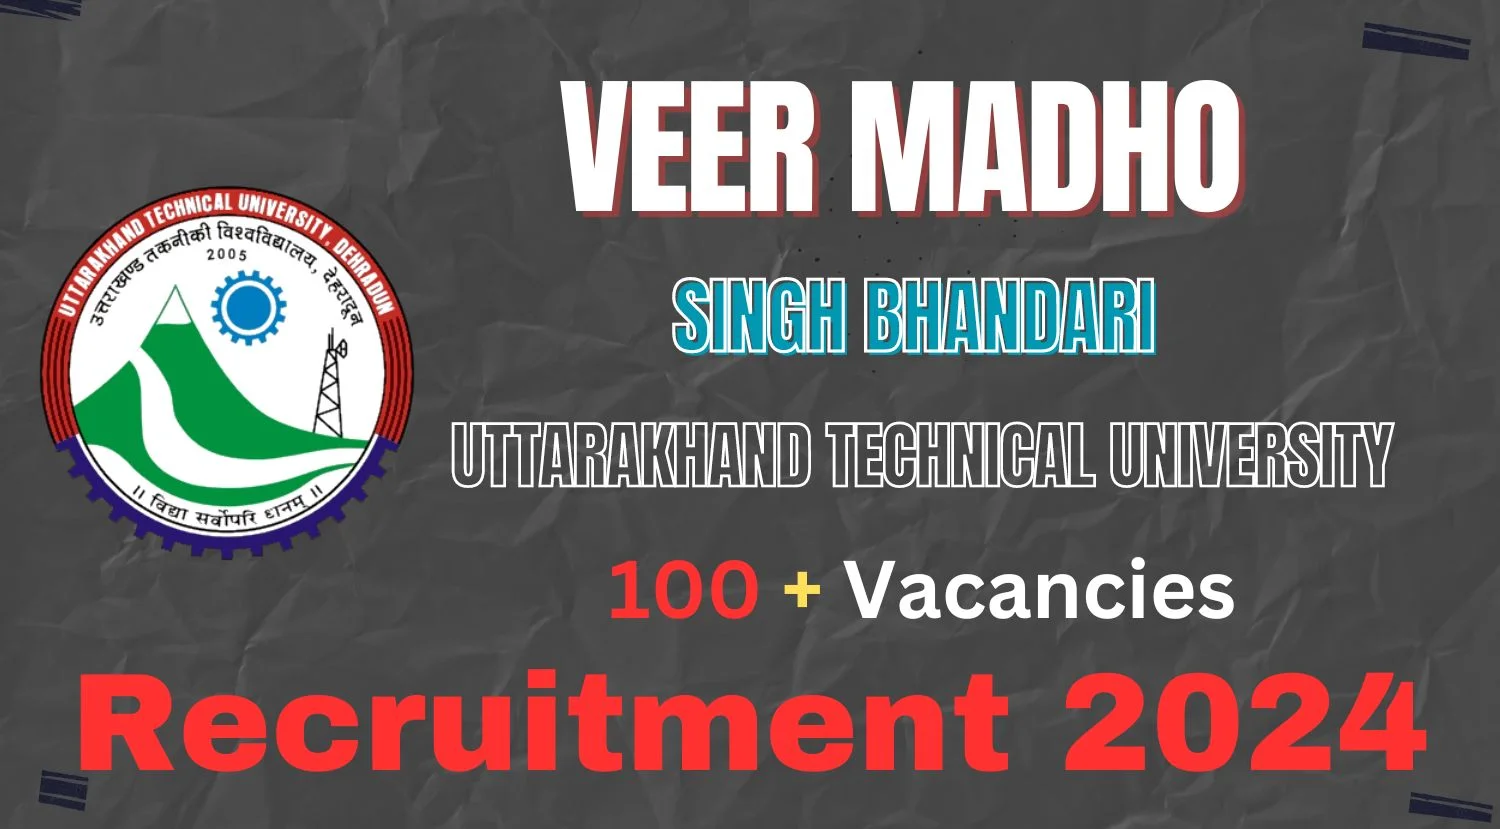 Veer Madho Singh Bhandari Uttarakhand Technical University Recruitment 2024